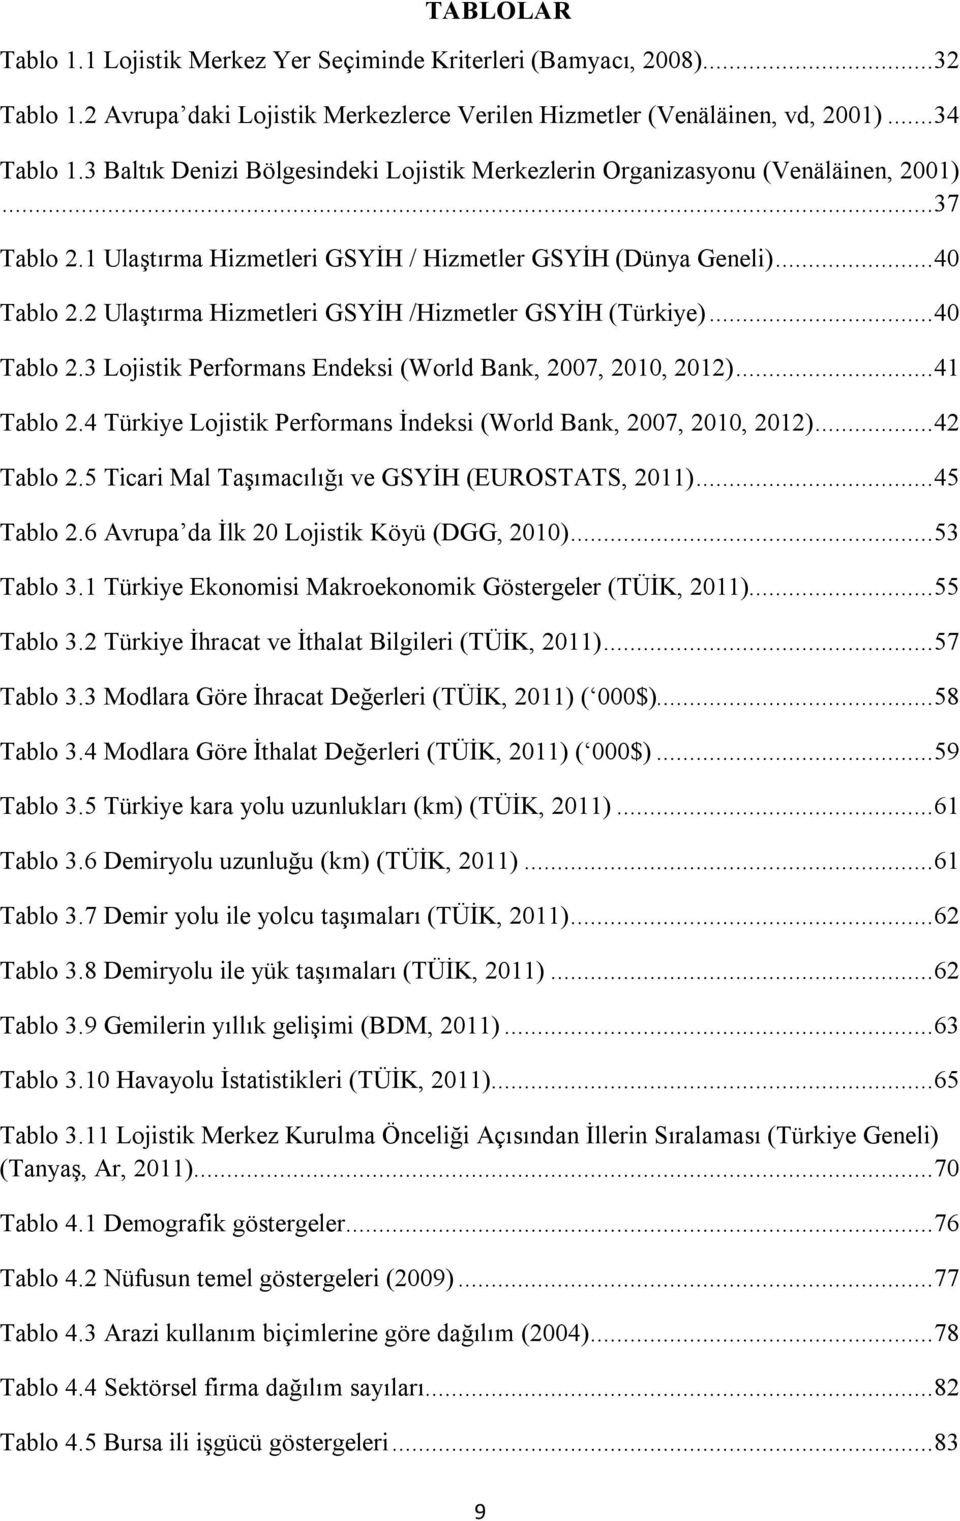 2 Ulaştırma Hizmetleri GSYİH /Hizmetler GSYİH (Türkiye)... 40 Tablo 2.3 Lojistik Performans Endeksi (World Bank, 2007, 2010, 2012)... 41 Tablo 2.